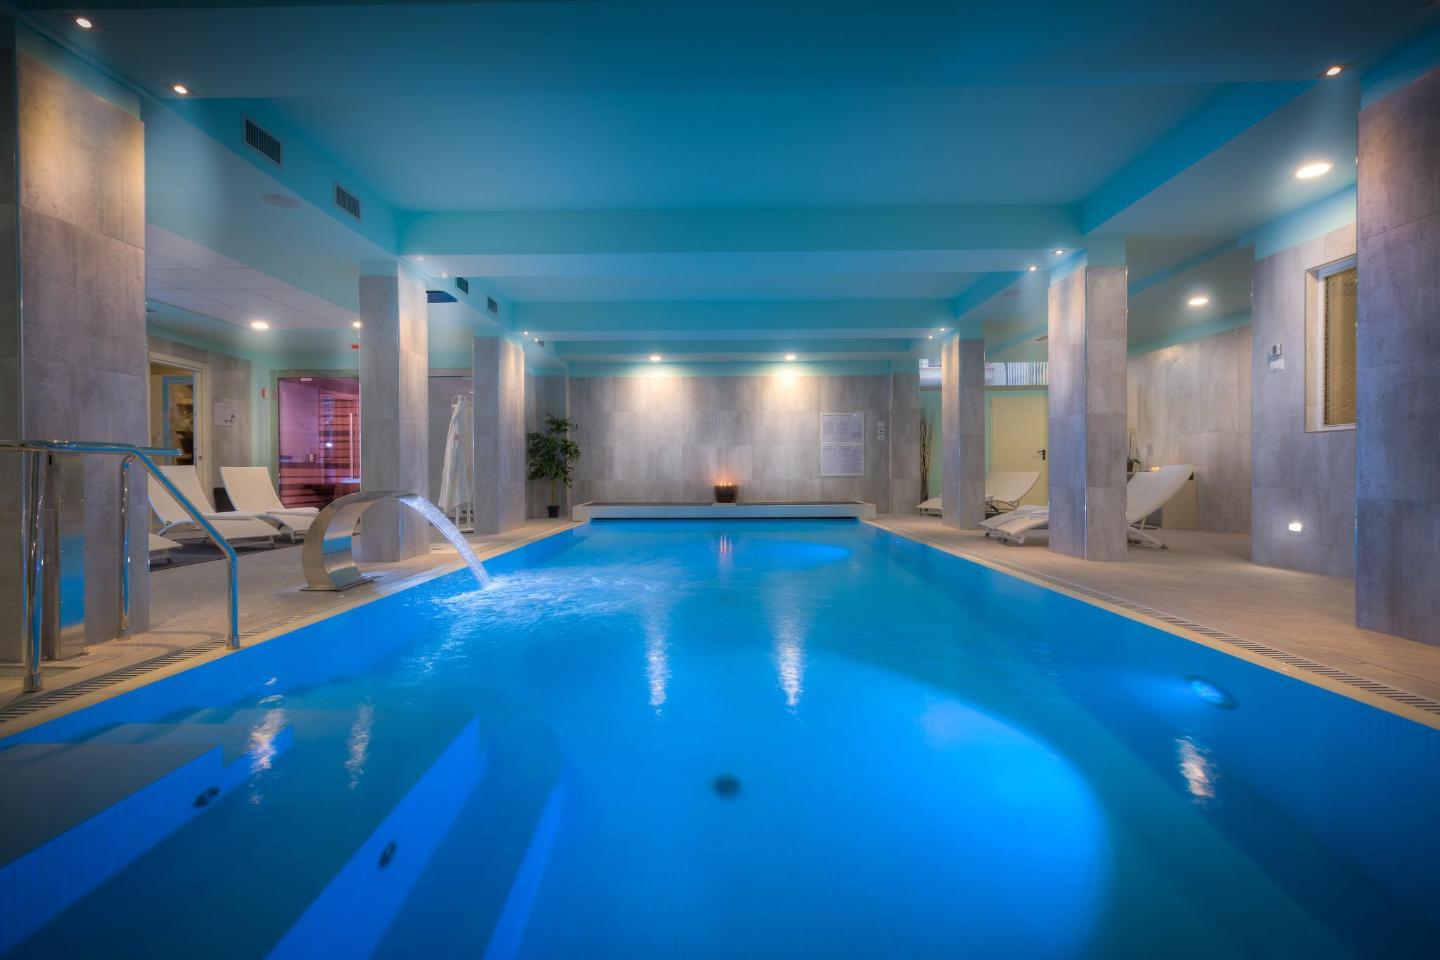 I 10 migliori hotel con piscina di Firenze, Italia | Booking.com